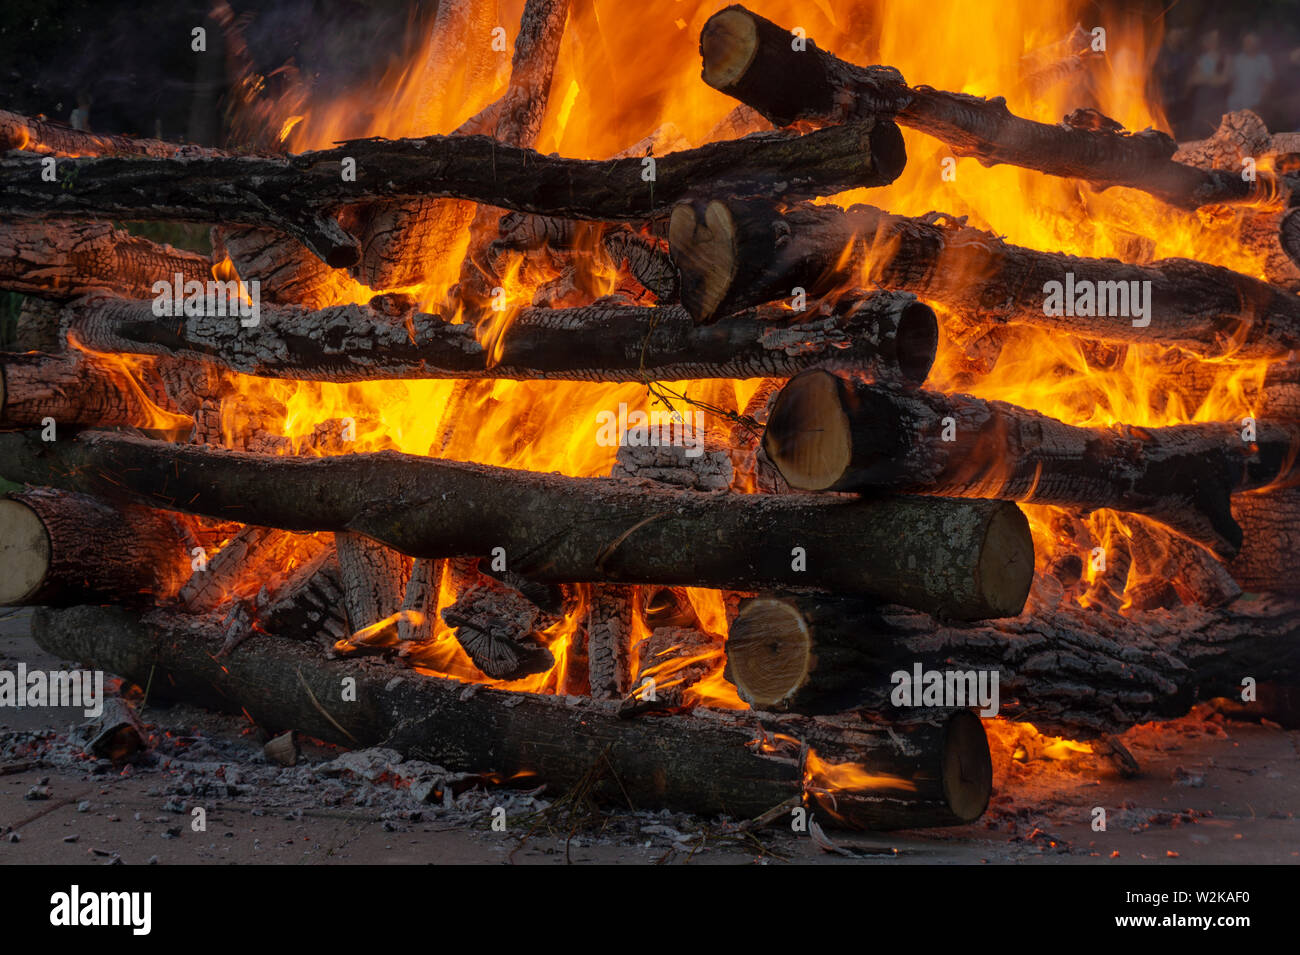 Feu Ardent avec billes de bois empilés contenant un feu avec des flammes orange chaud dans une vue en gros plan Banque D'Images